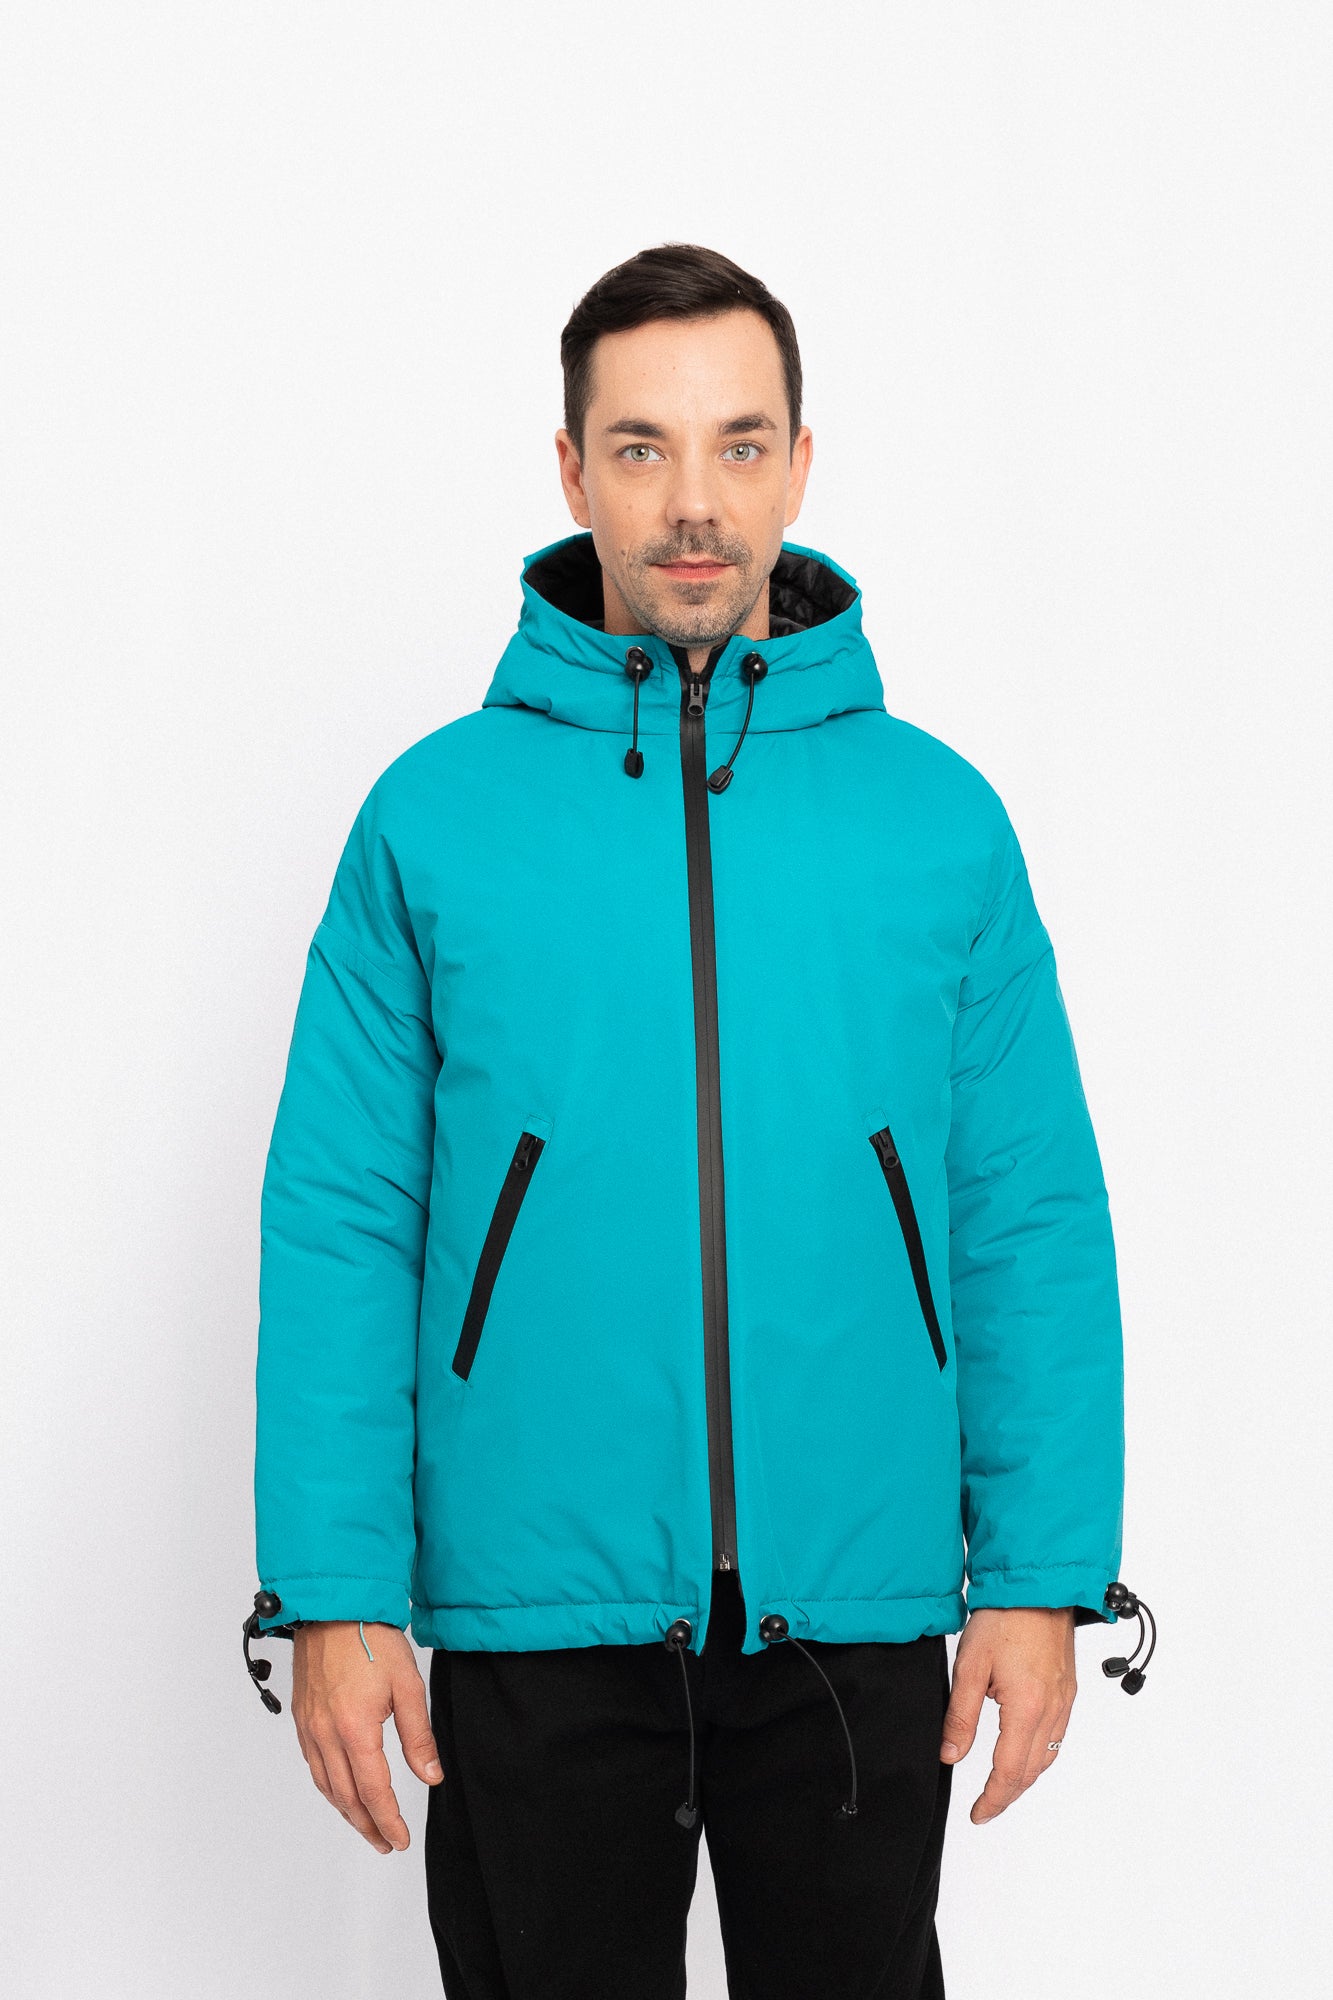 Winter Jacket - Turquoise